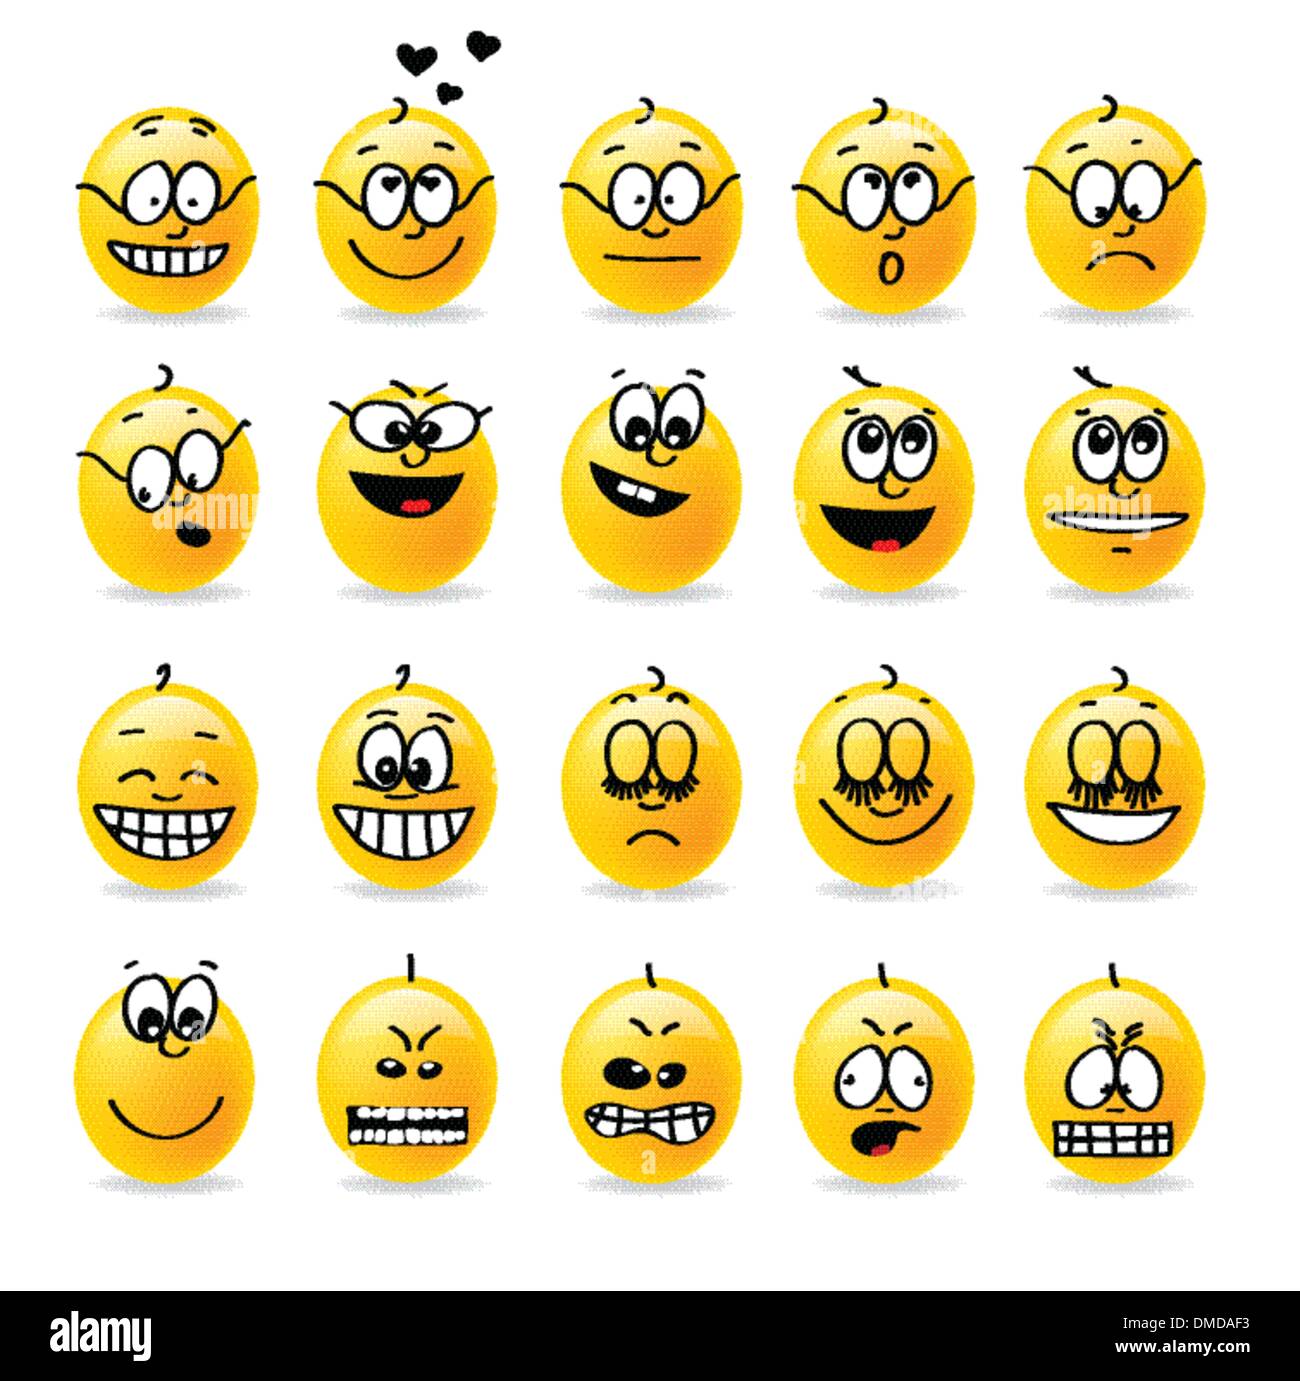 Smiley vecteur d'émotions moods Illustration de Vecteur